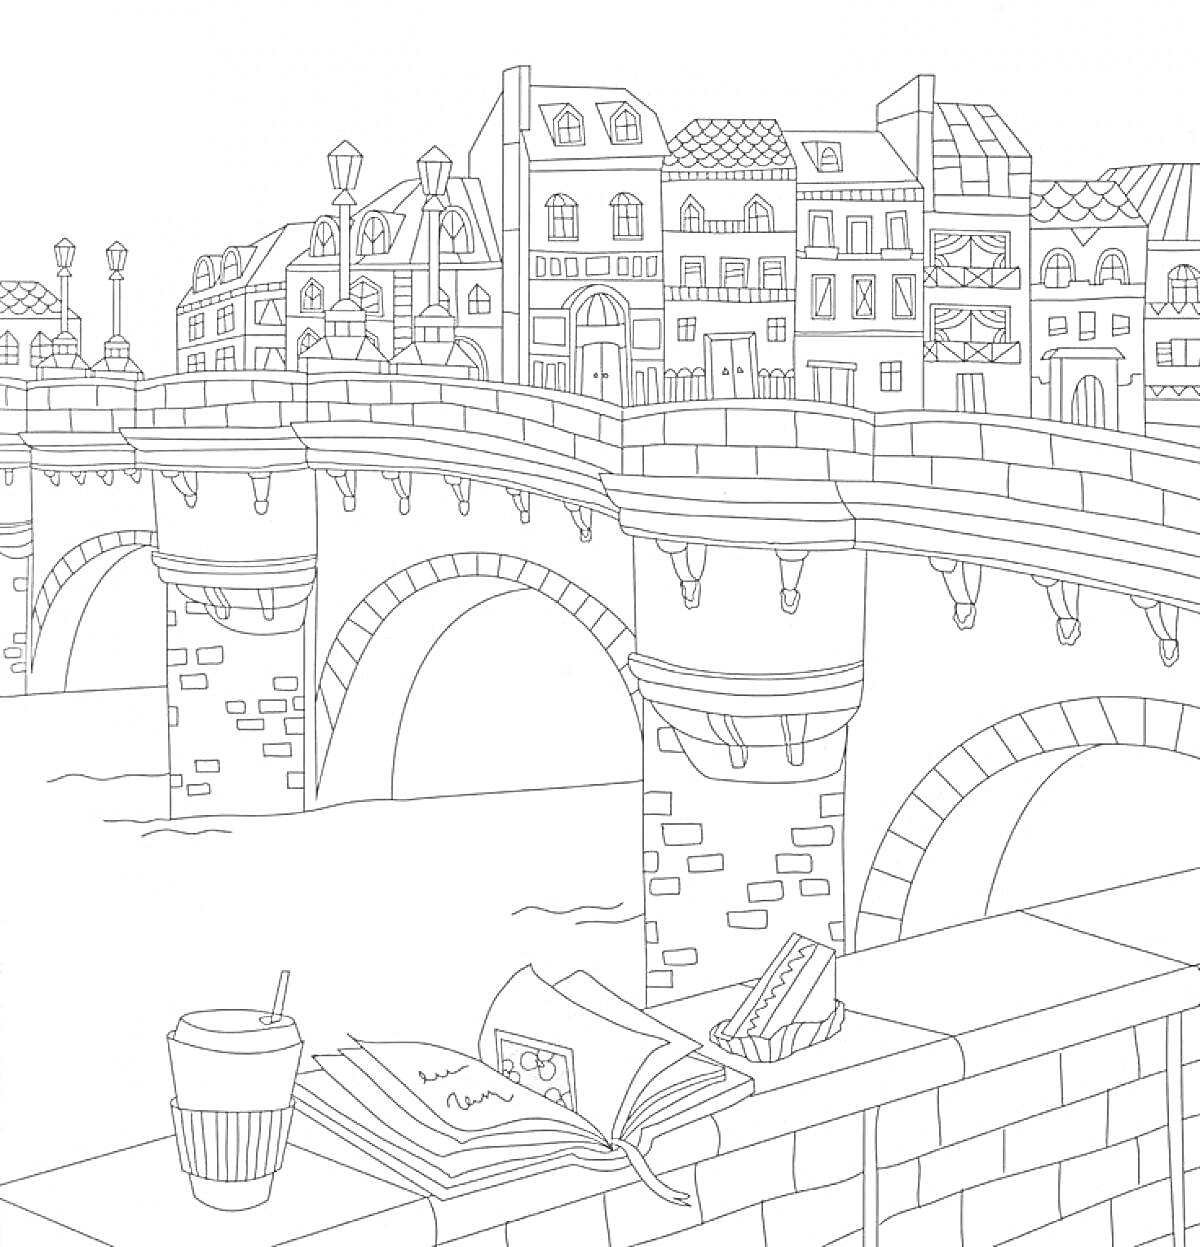 Раскраска Старый мост во Франции с книгой, кофе и сендвичем на парапете